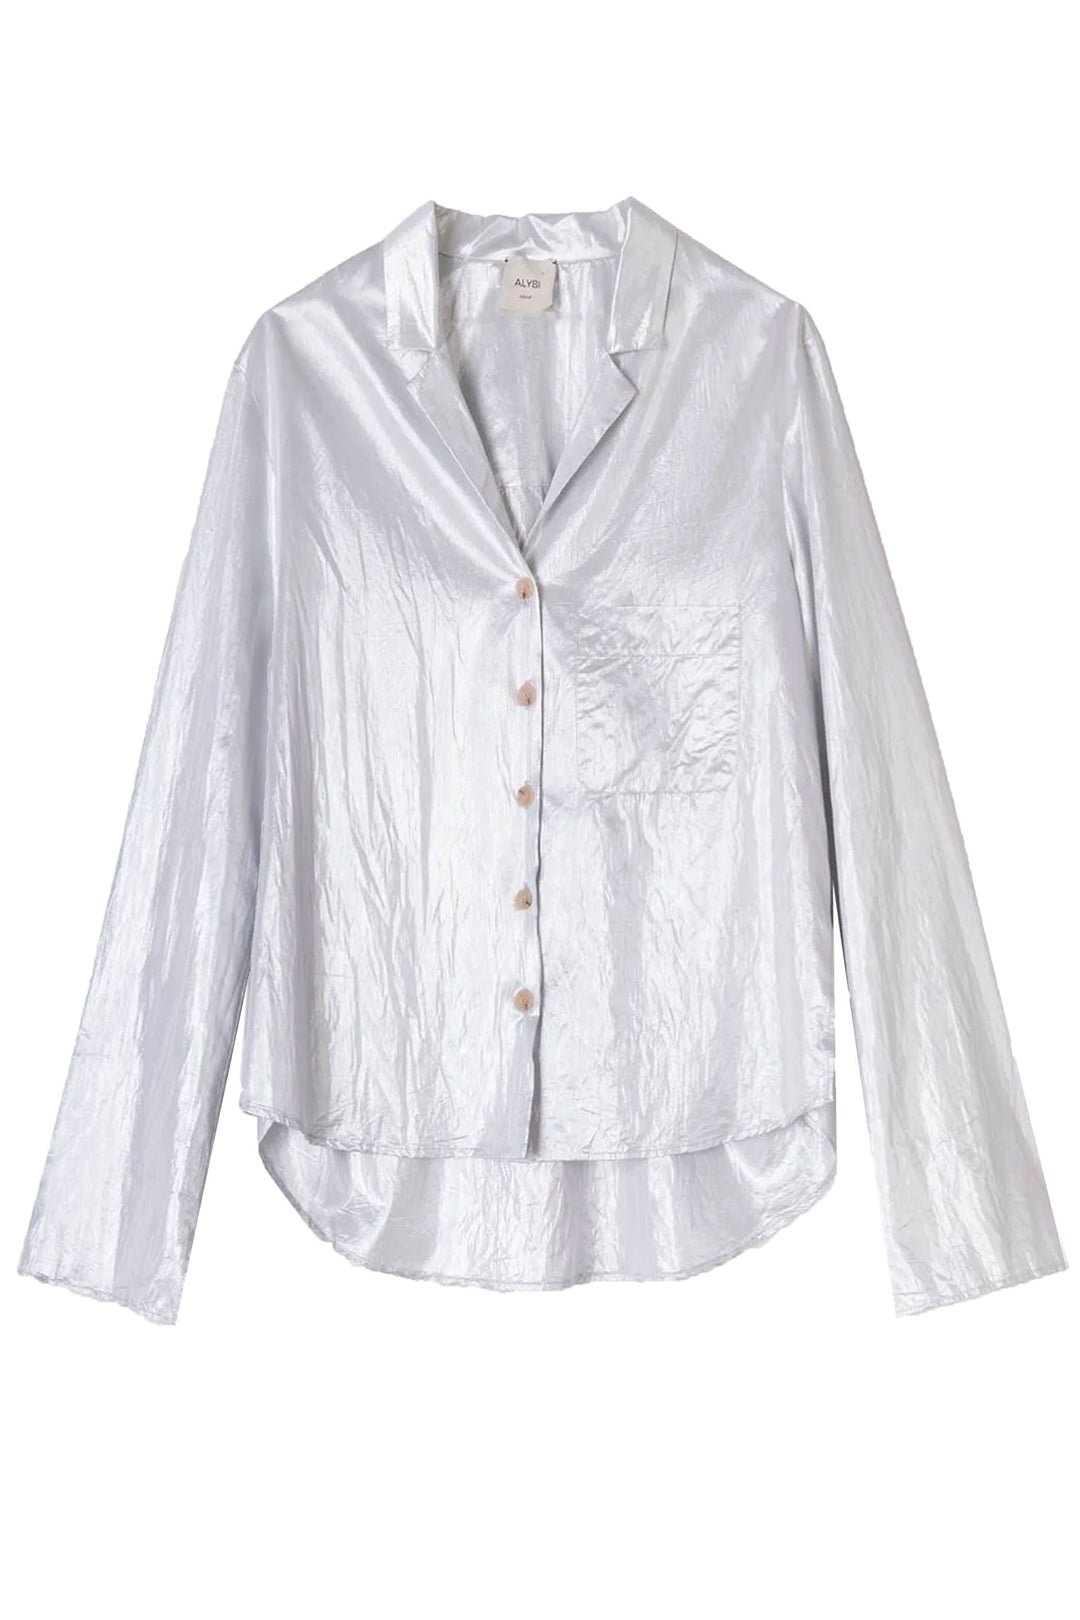 Alysi Shinning Shirt - Silver